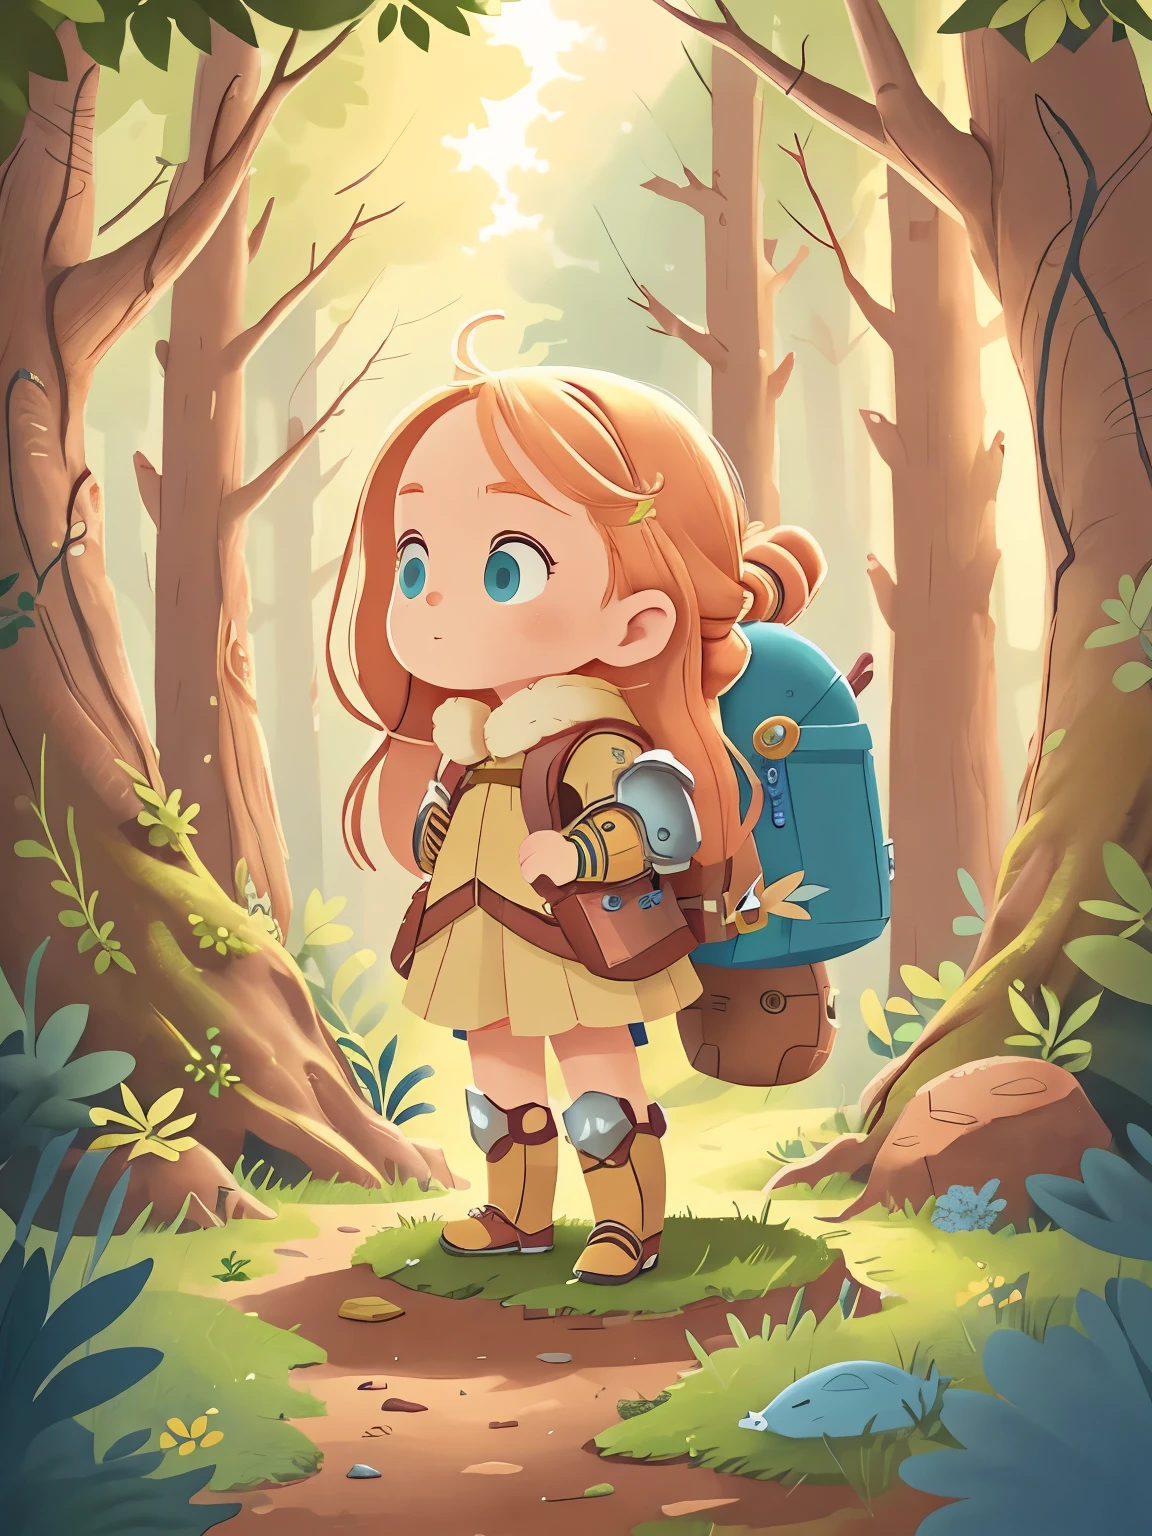 的全身輪廓 . 金色的長髮, 藍色的大眼睛. 她穿著可愛的盔甲，專為 , 就像她正在進行一場小小的奇幻冒險. 她背著一個裝滿物資的背包. 她興奮地凝視著魔法森林.